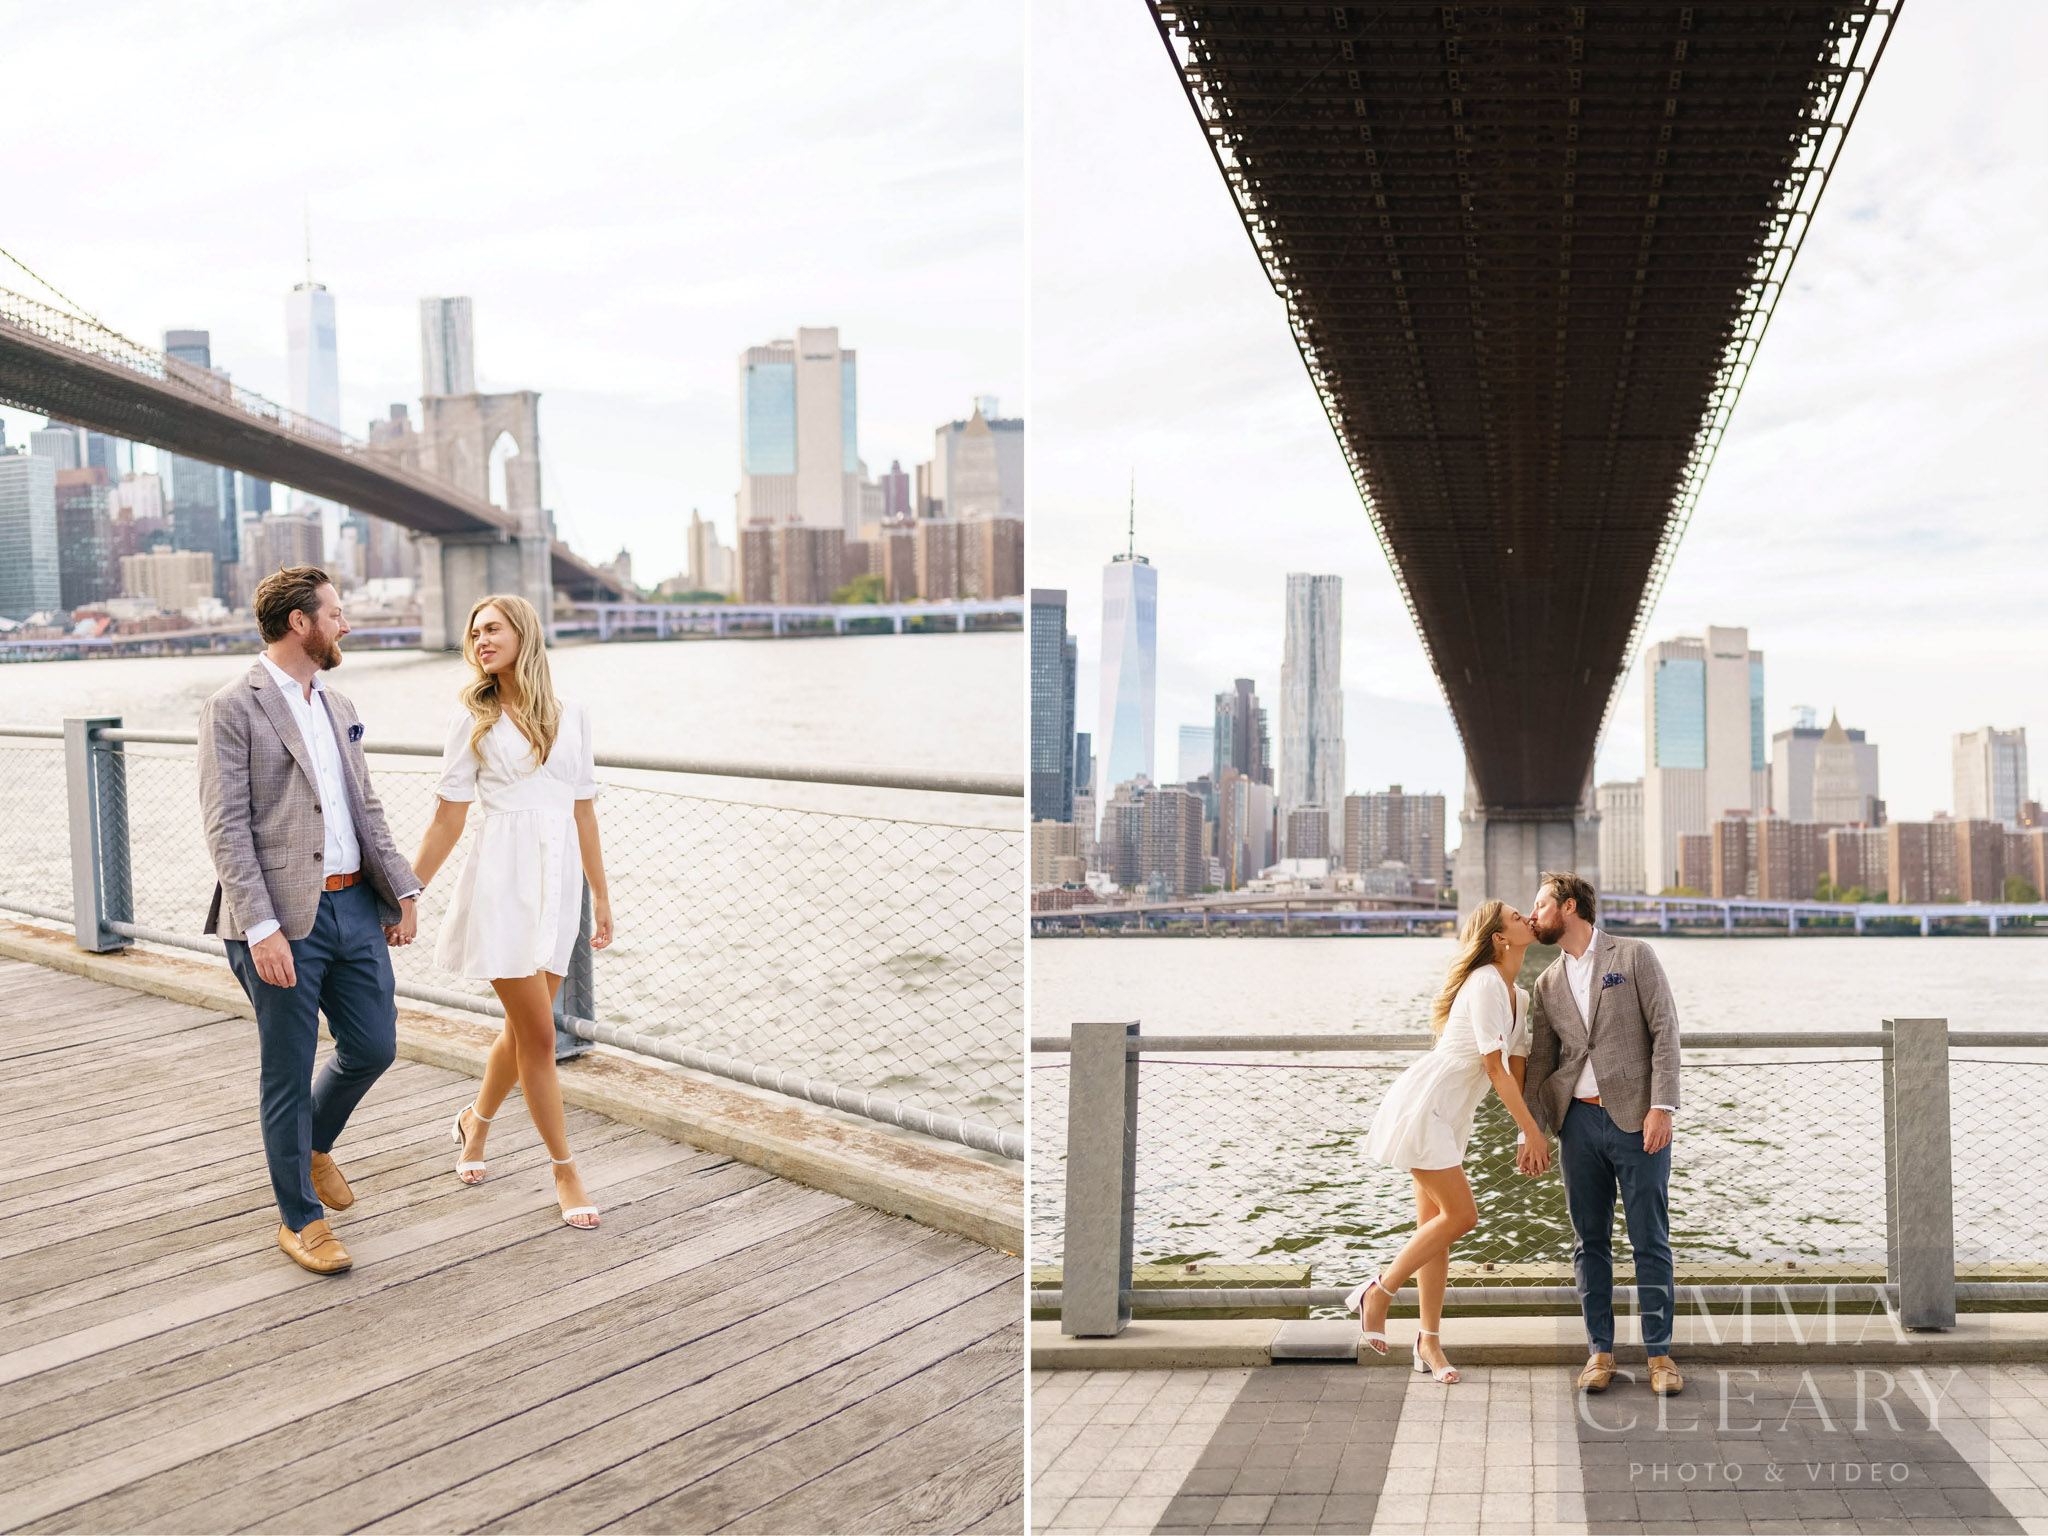 A walk under the Brooklyn Bridge